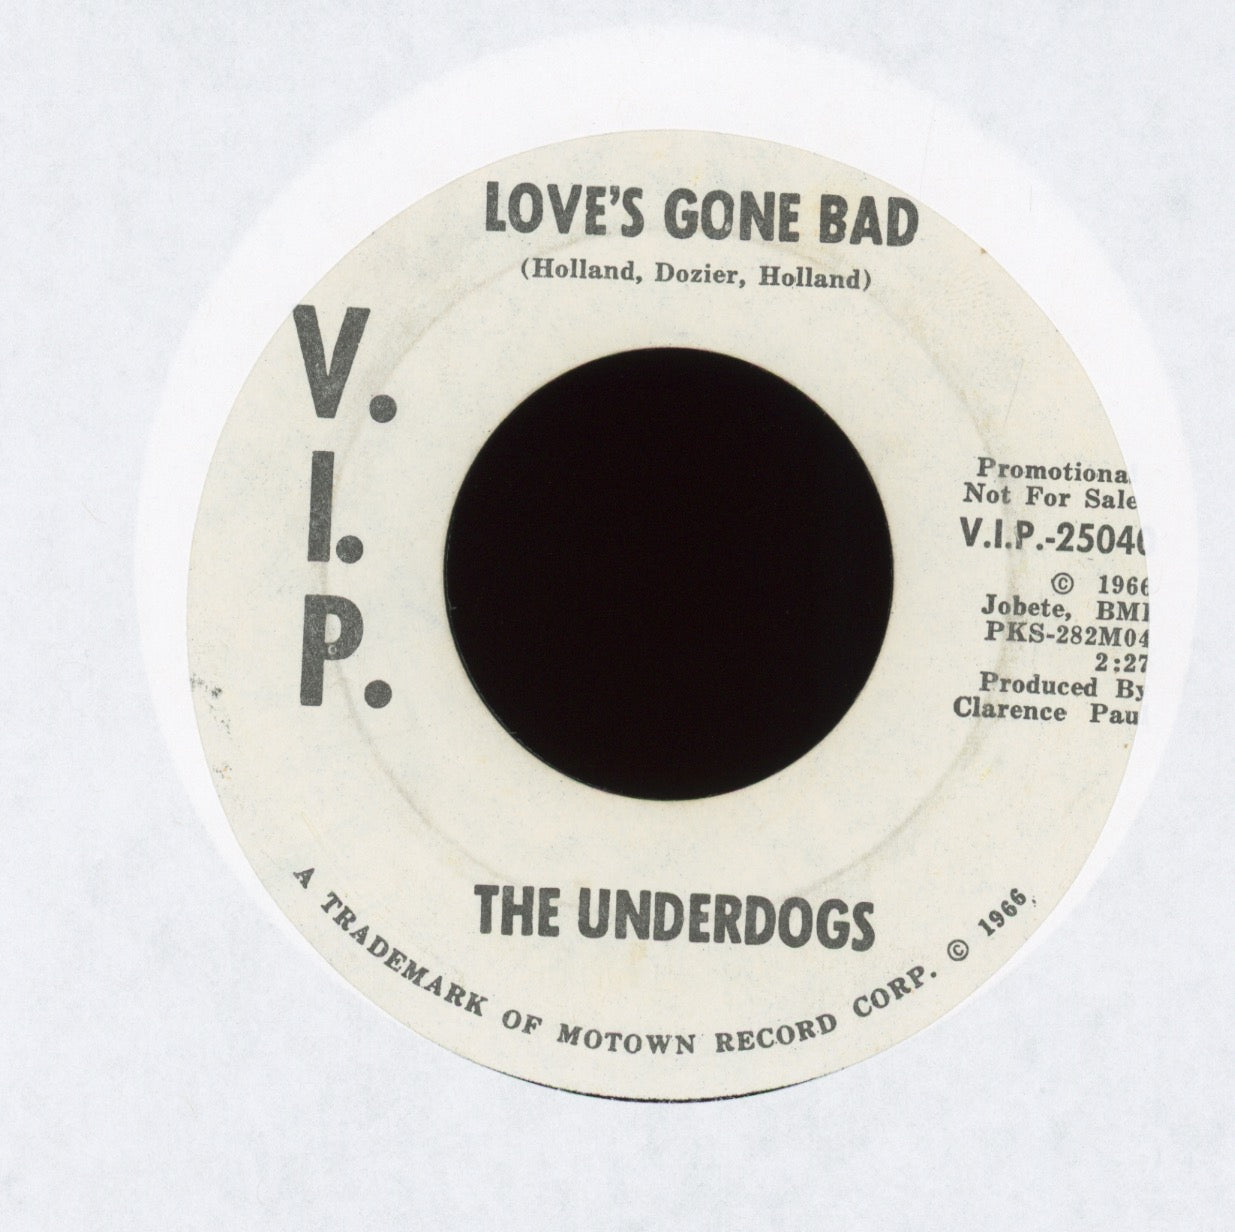 The Underdogs - Love's Gone Bad on V.I.P. Promo Northern Soul Garage 45